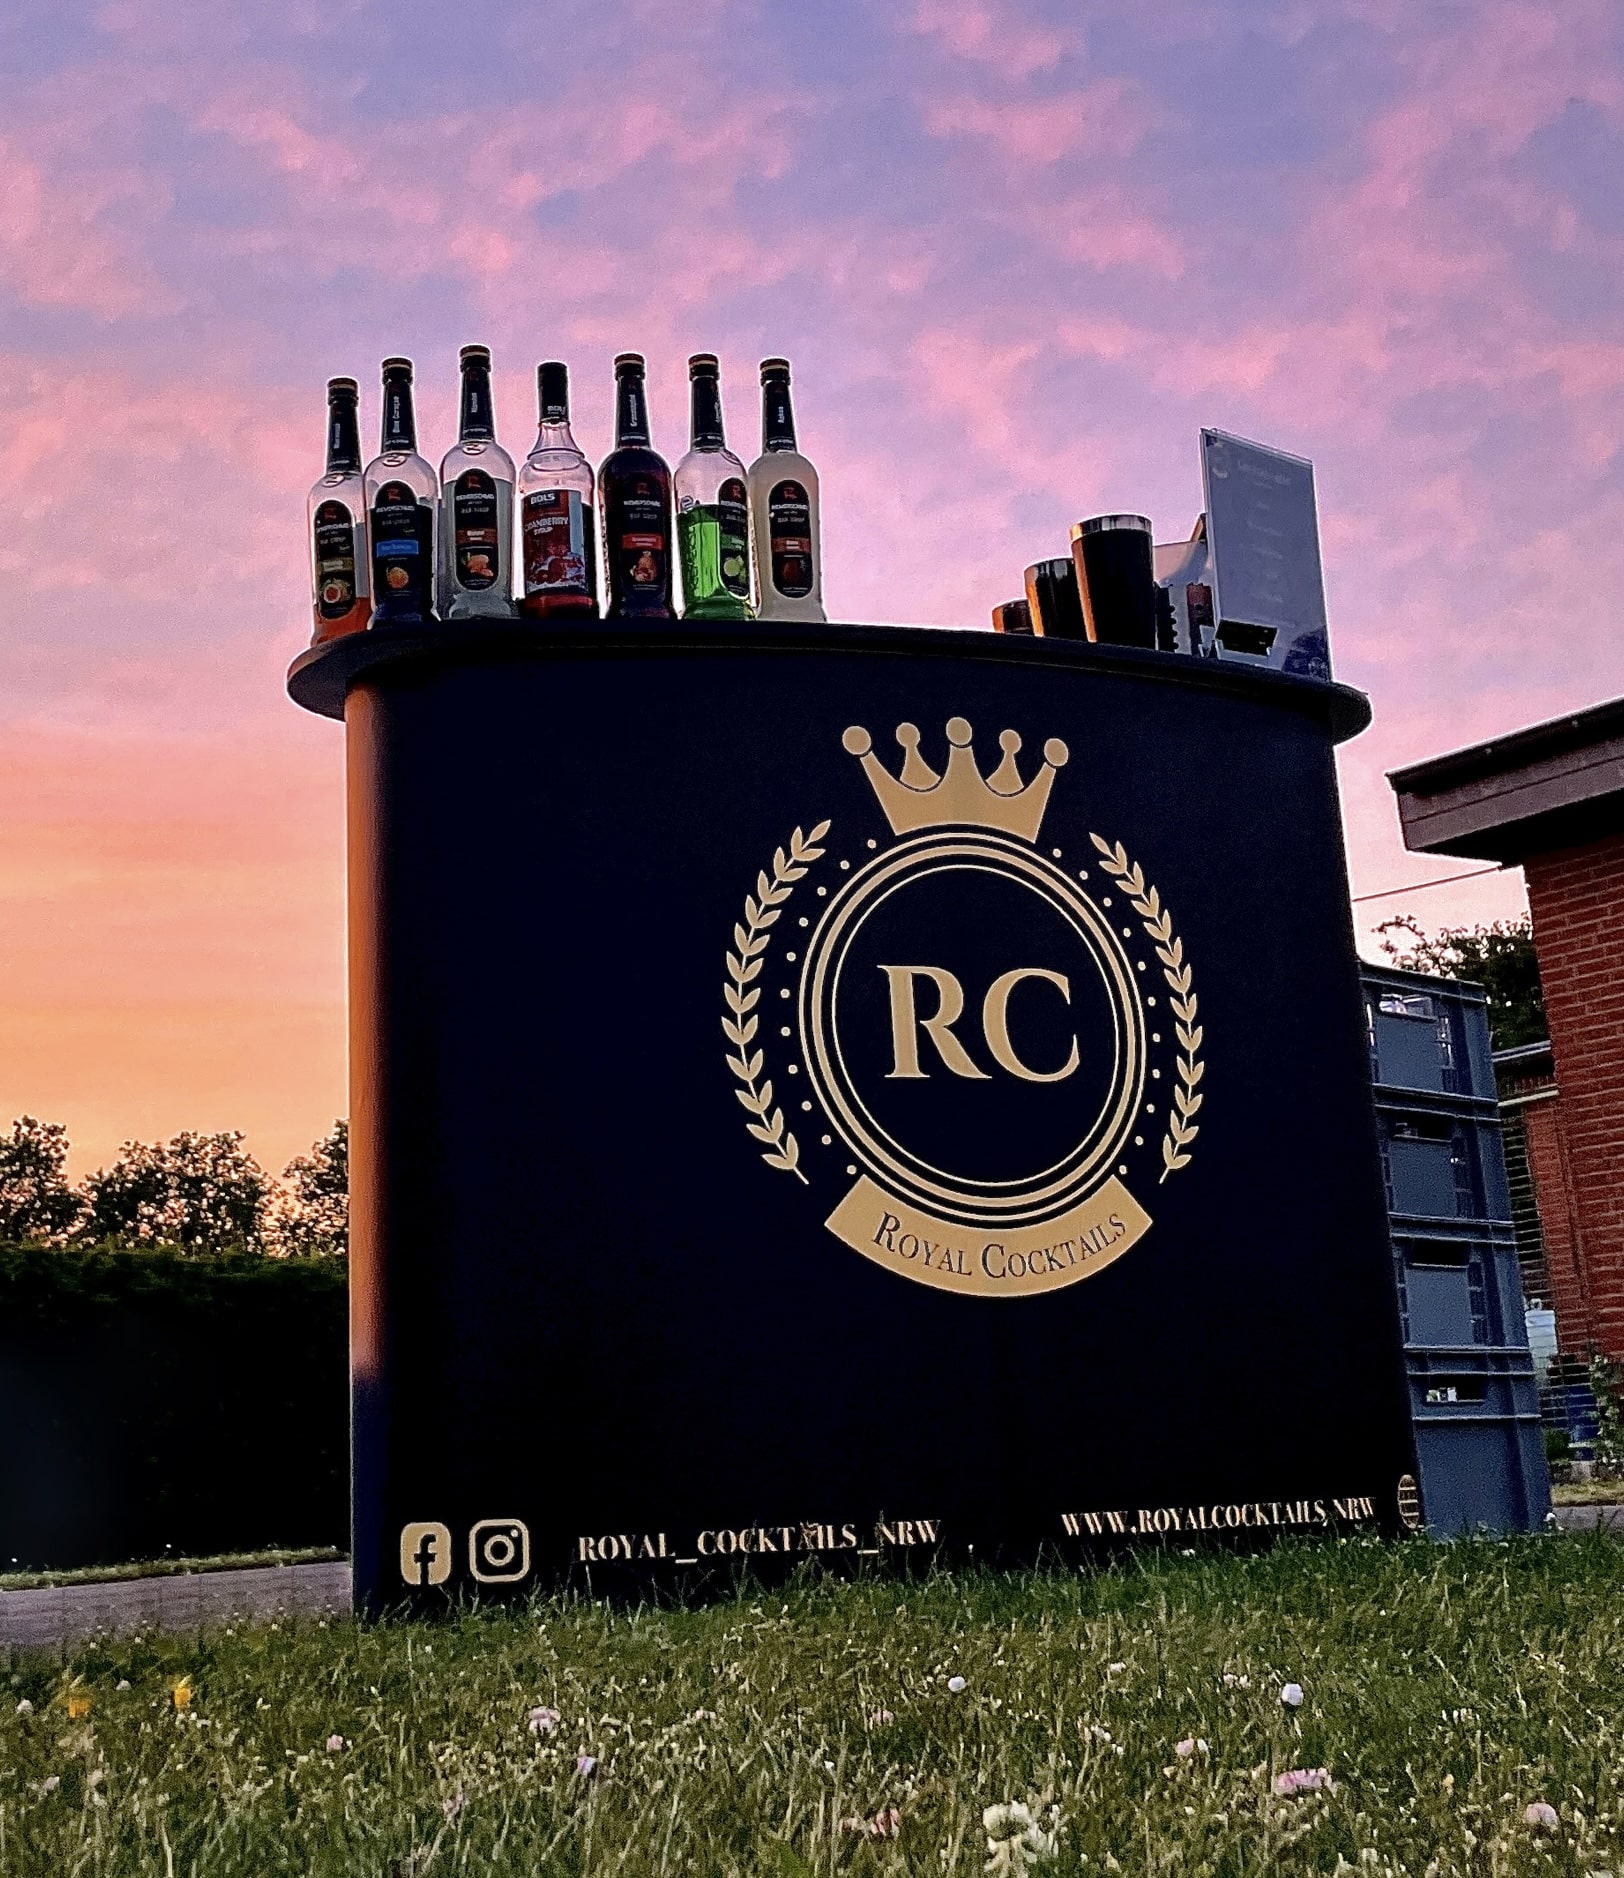 Ein zweites Bild des Unternehmens: Royal Cocktails in Moers